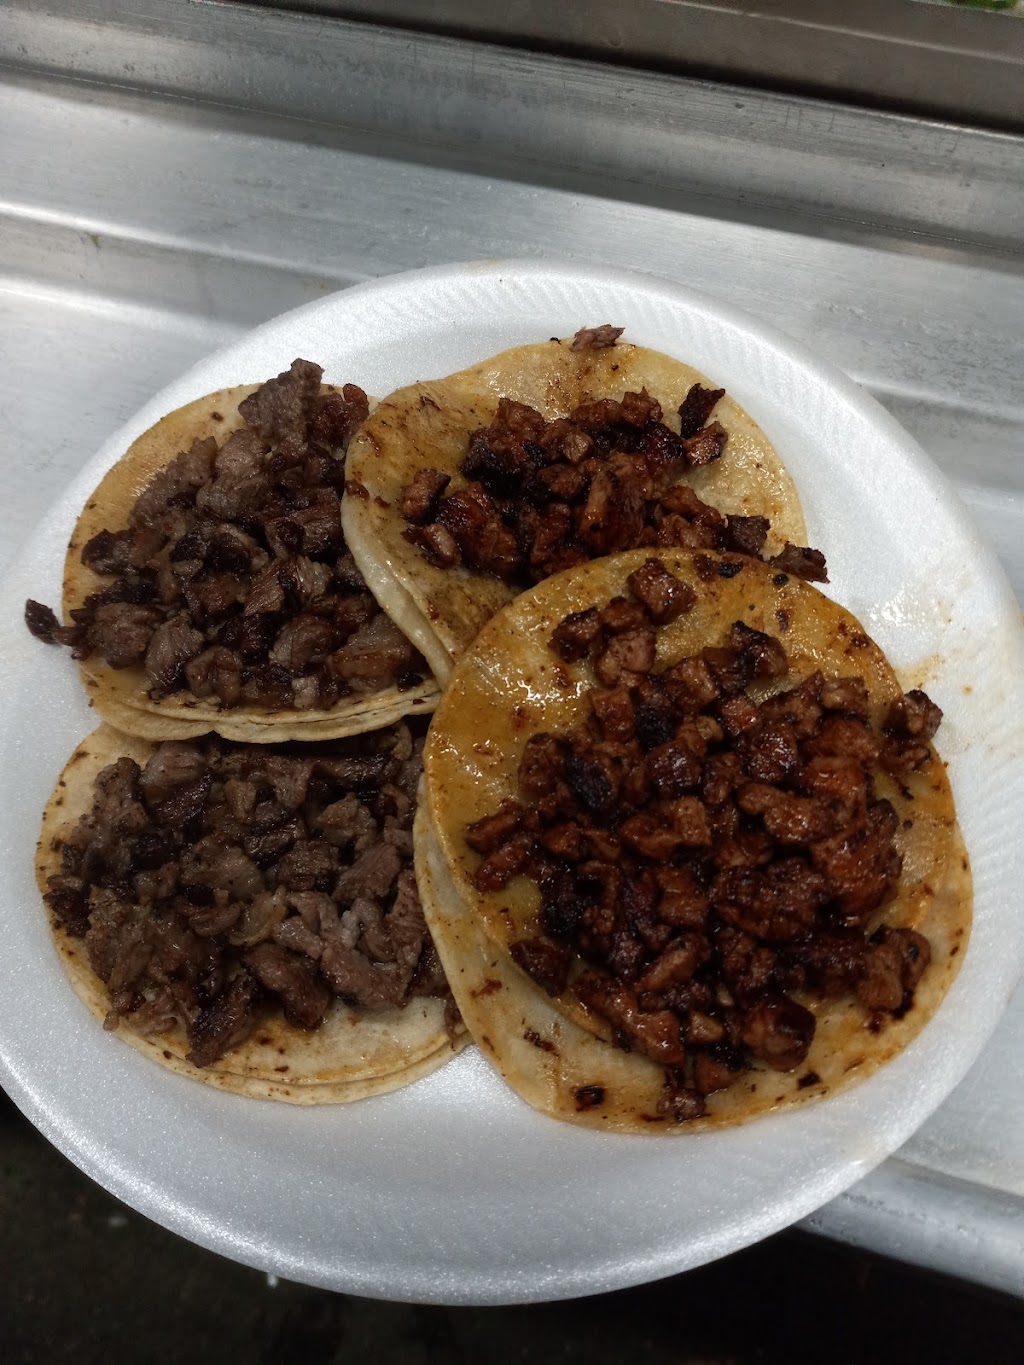 Tacos Los Tapatios | 959 N Susan St, Santa Ana, CA 92703, USA | Phone: (714) 740-9887